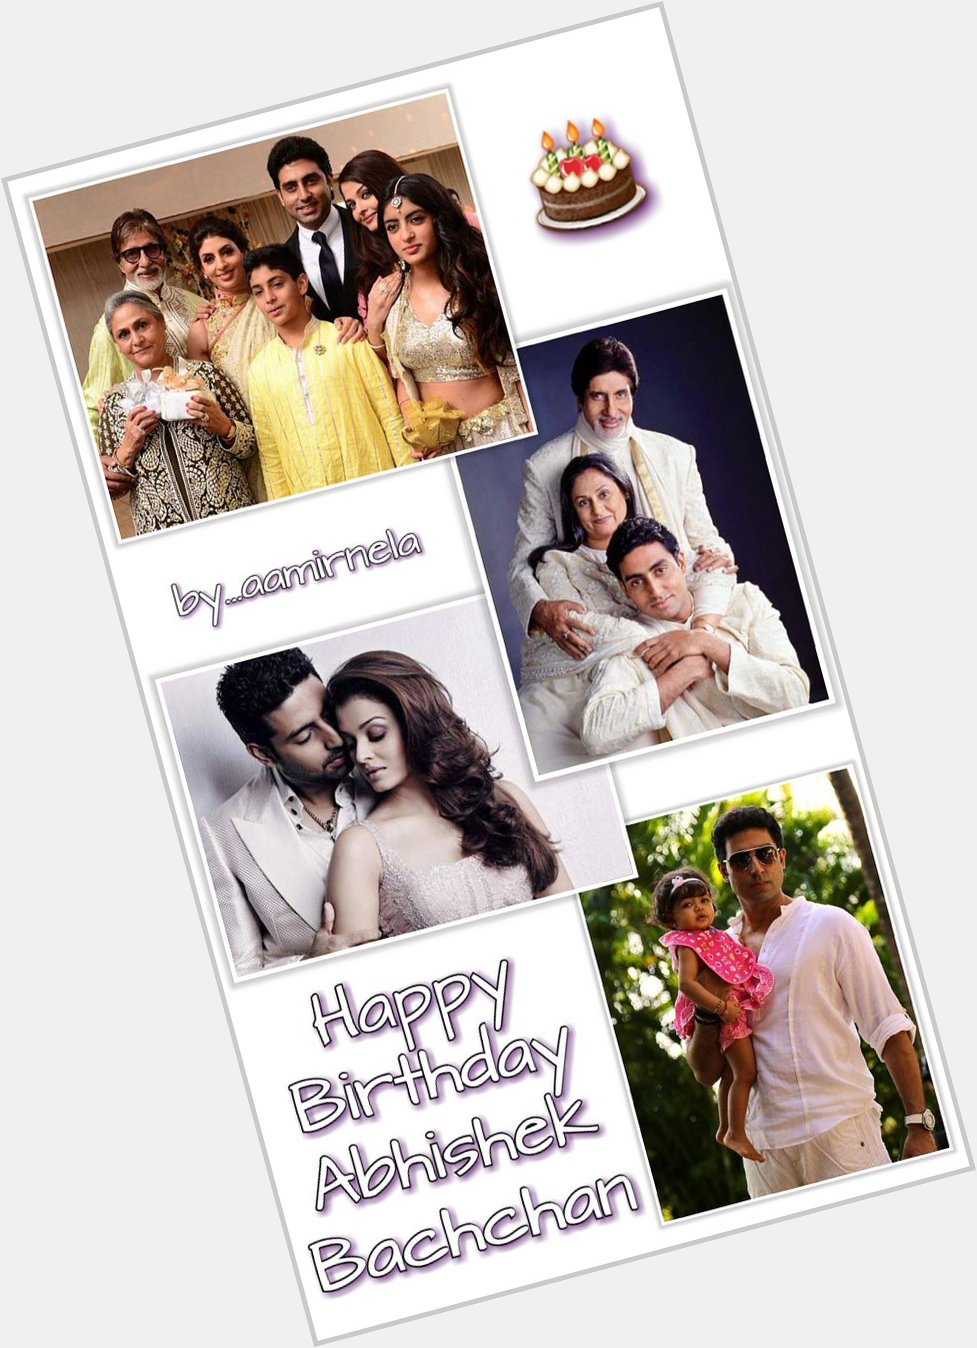 Happy Birthday ...
Abhishek Bachchan 